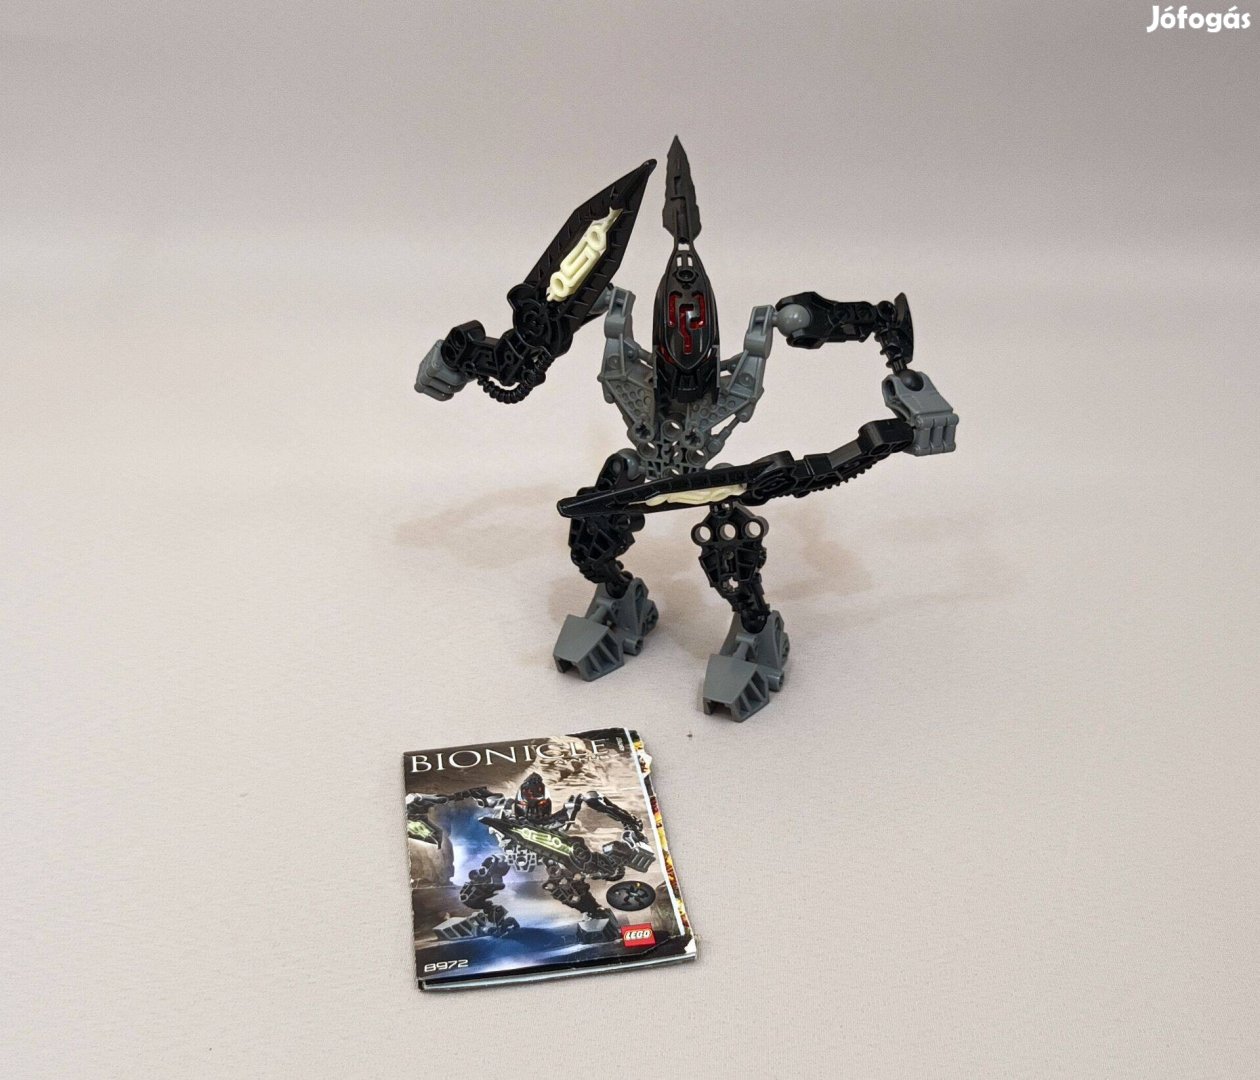 LEGO 8972 Bionicle Atakus